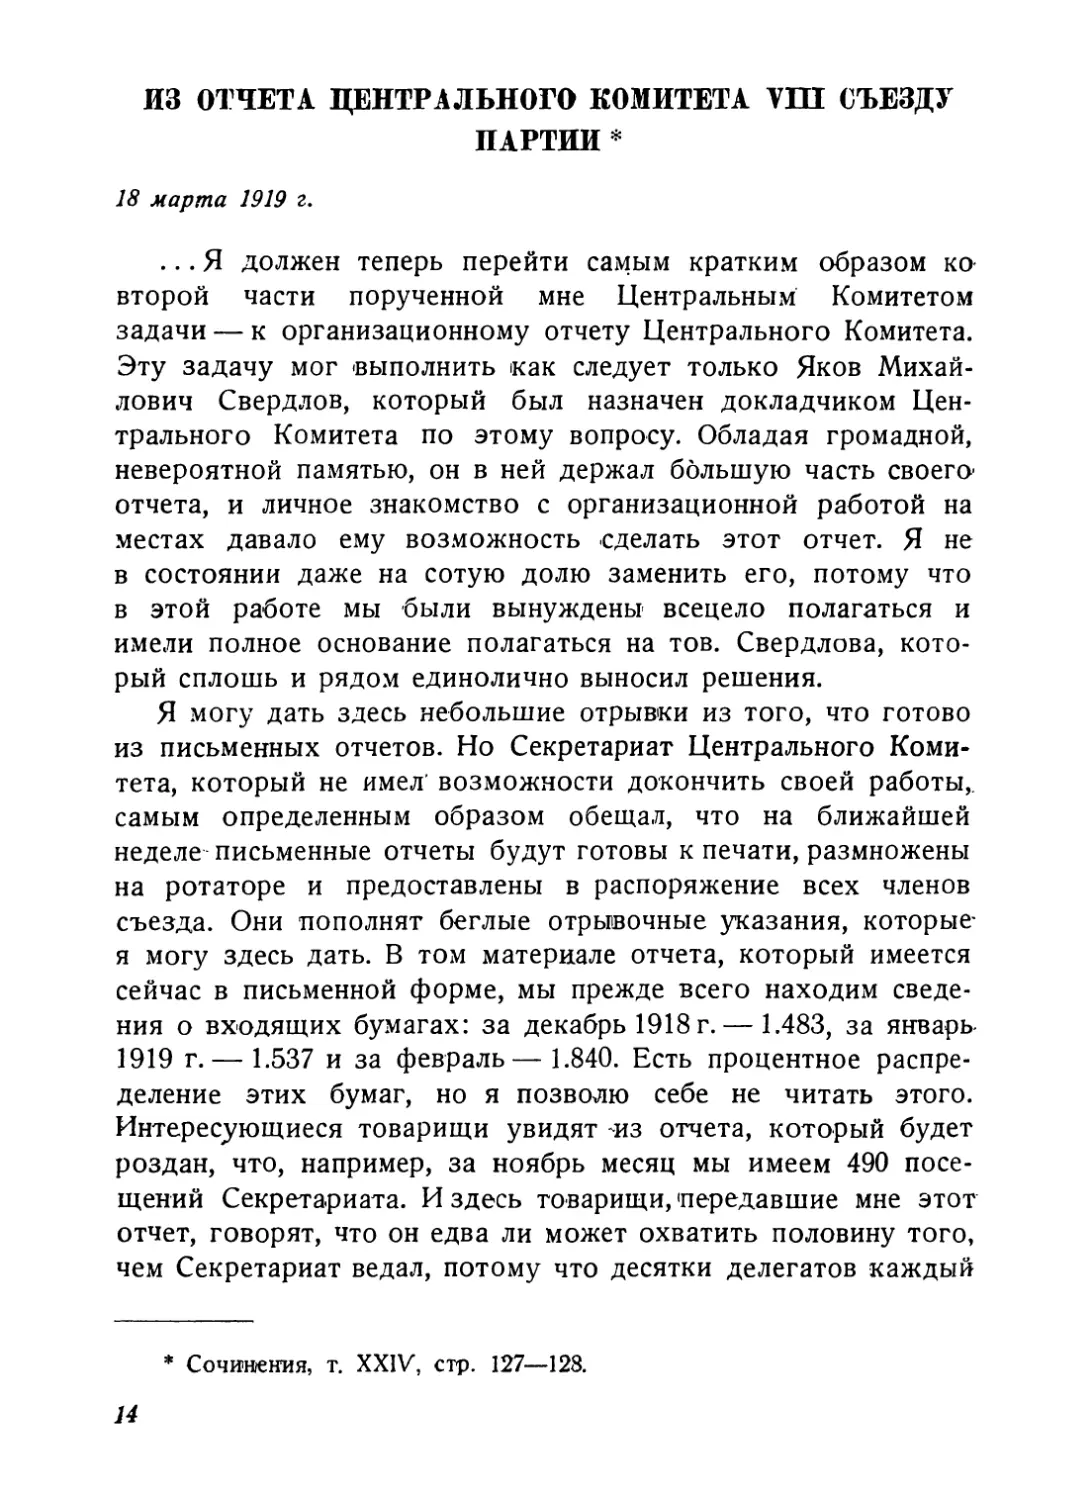 Из отчета Центрального Комитета VIII съезду партии, 18 марта 1919 г